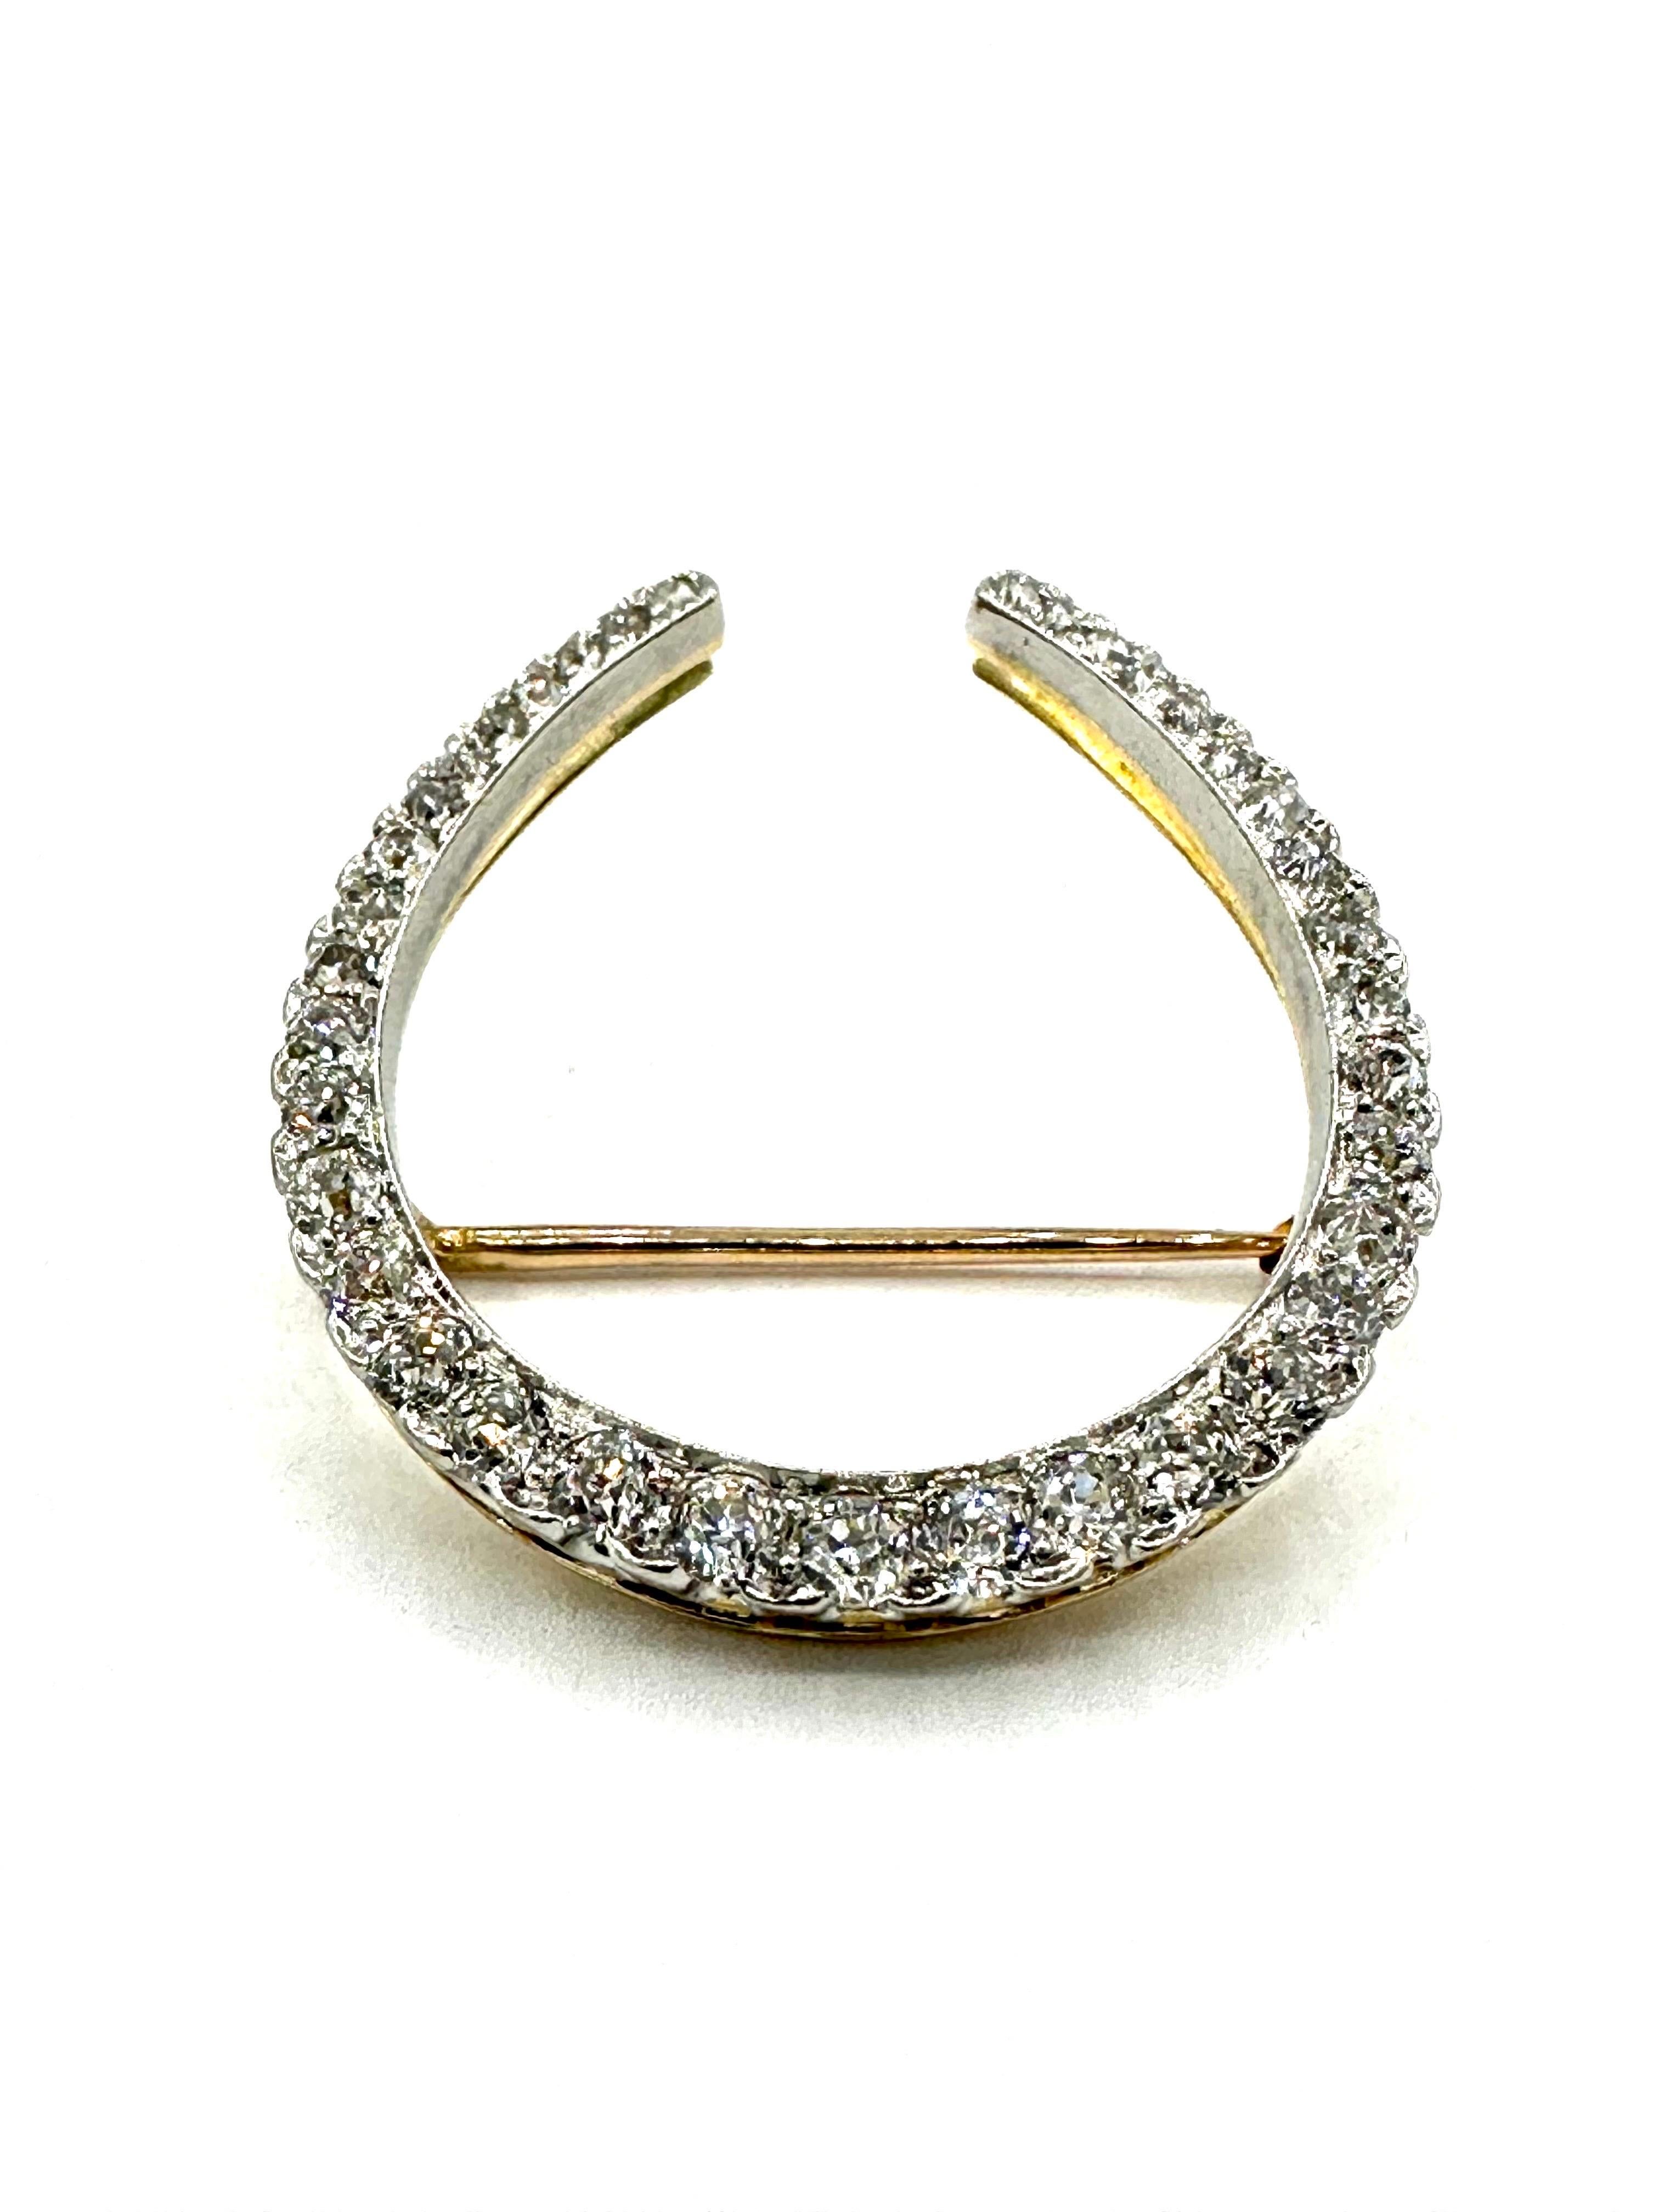 Eine schön symmetrische Diamant-Hufeisen-Brosche!  Das Hufeisen ist mit 37 alten europäischen Diamanten besetzt, die zur Mitte hin in gemeinsamen Zacken aus Platin und einer Fassung aus 18 Karat Gelbgold verlaufen.  Die 37 Diamanten haben ein